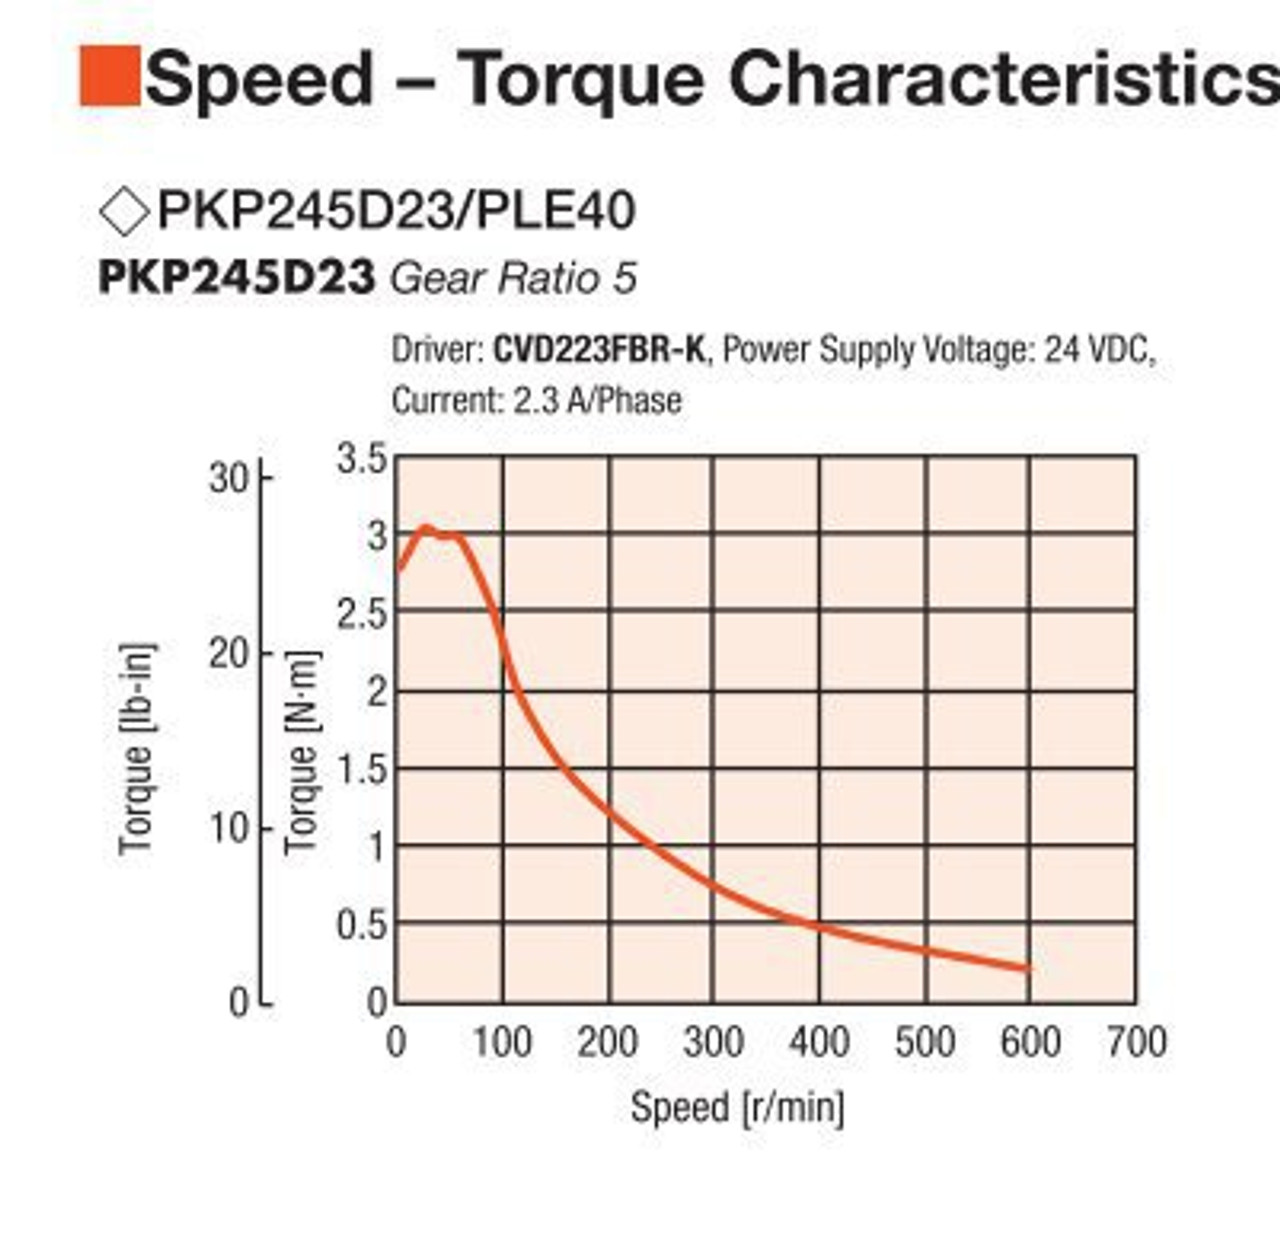 PKP245D23A2-R2FL / PLE40-5B / P00027 - Speed-Torque